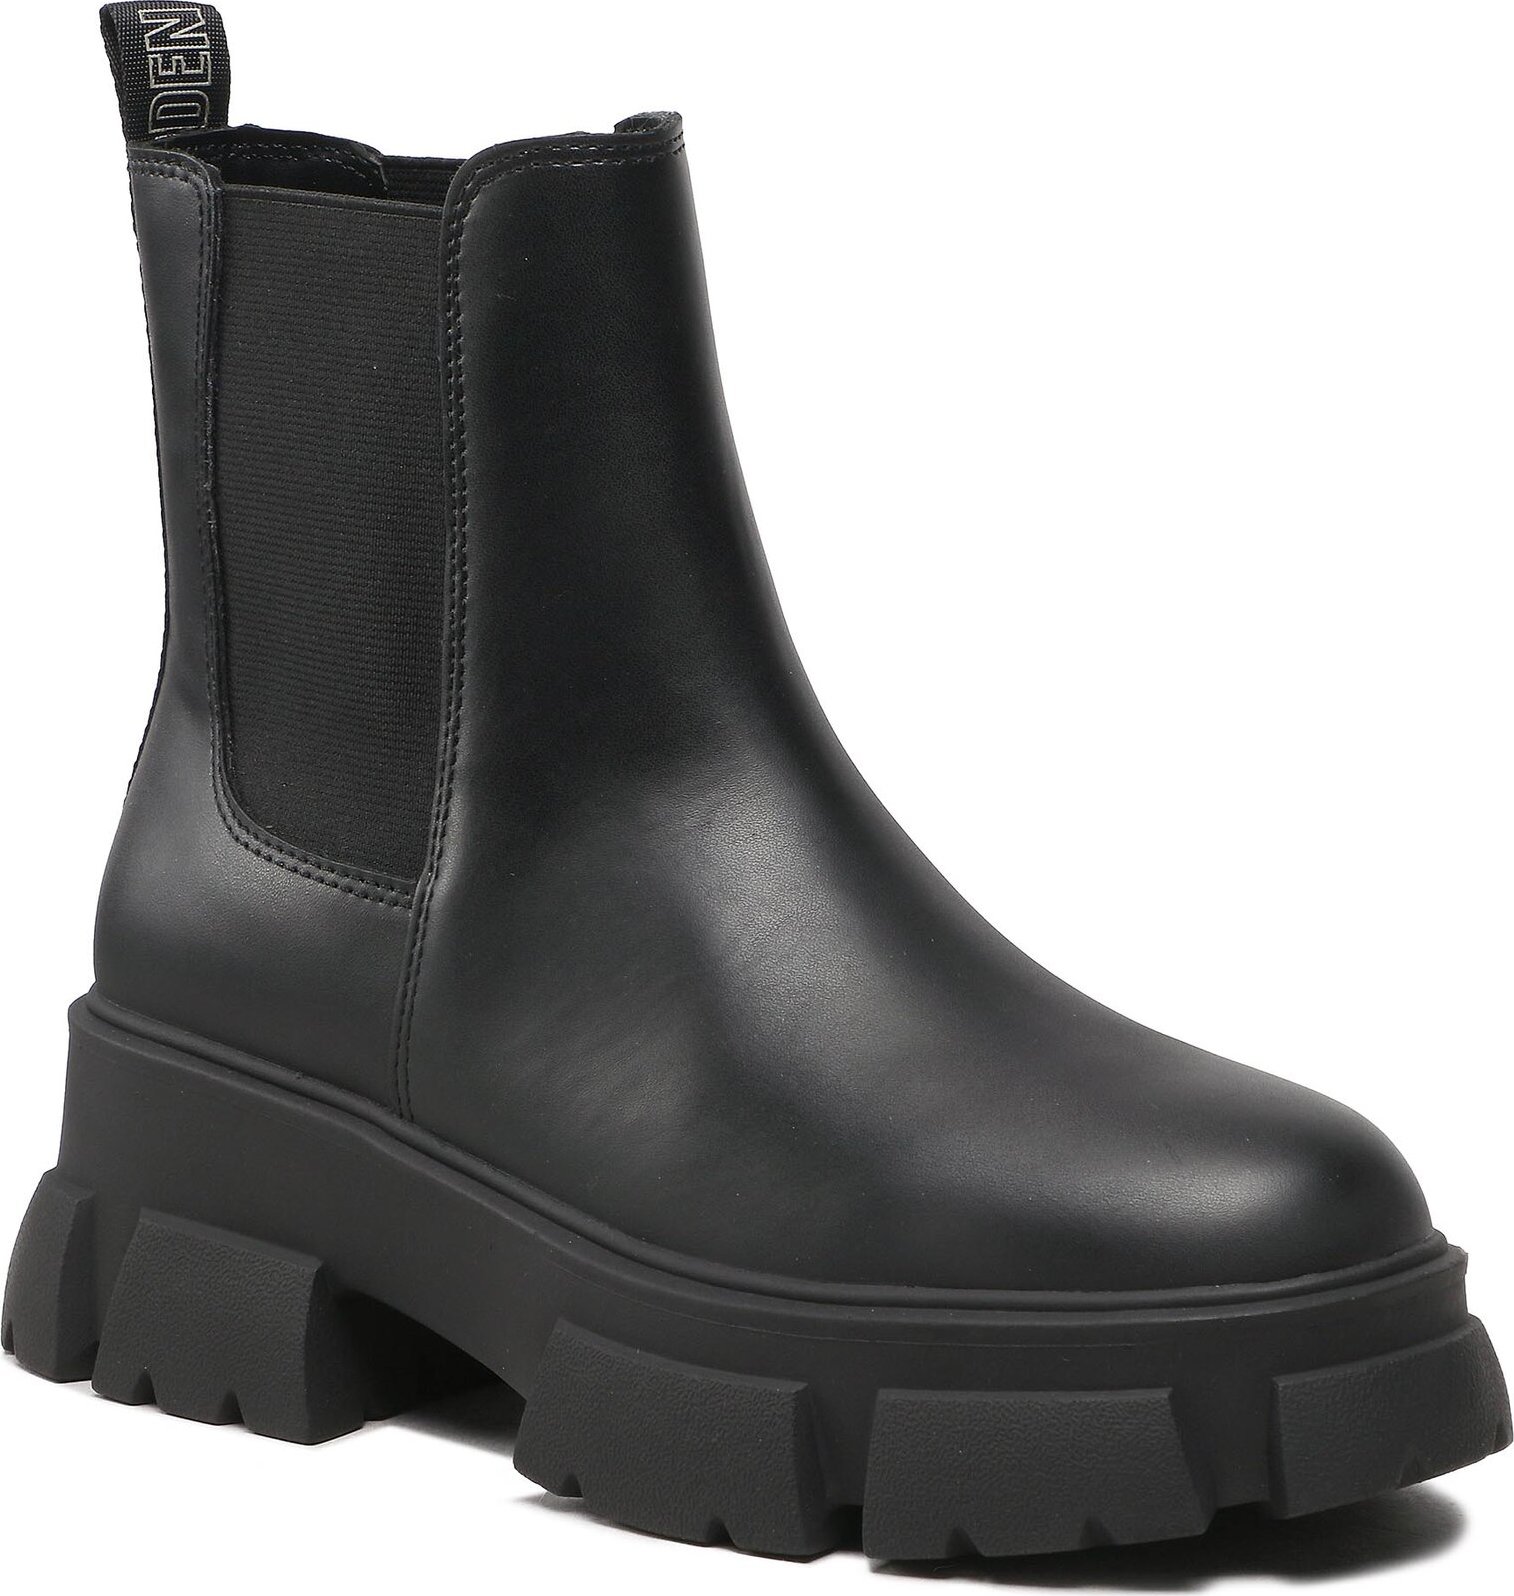 Kotníková obuv s elastickým prvkem Steve Madden Tunnel SM19000015-03001-017 Black Leather